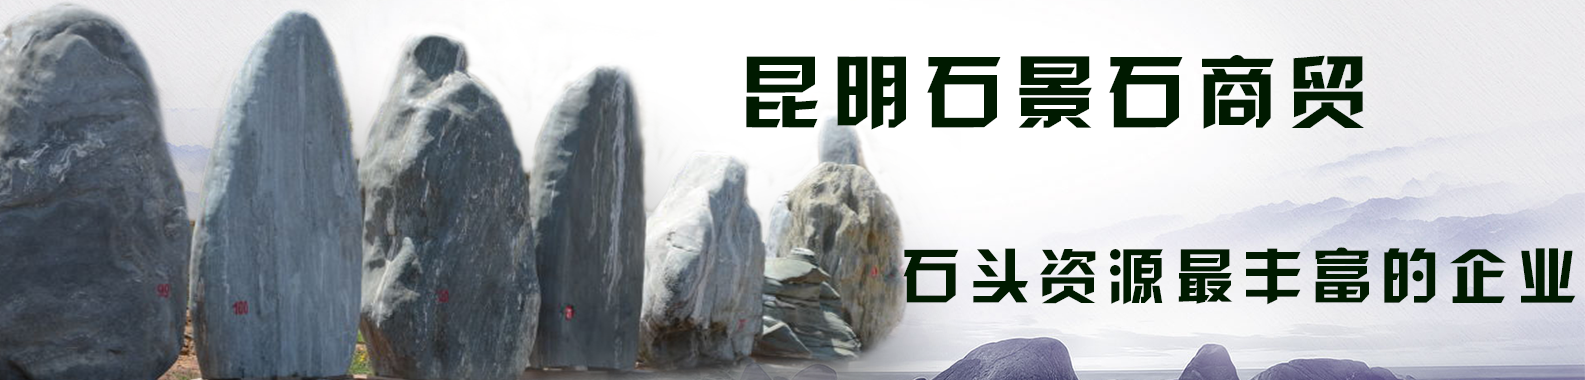 我来告诉你哪些因素会影响云南昆明招牌石的销量